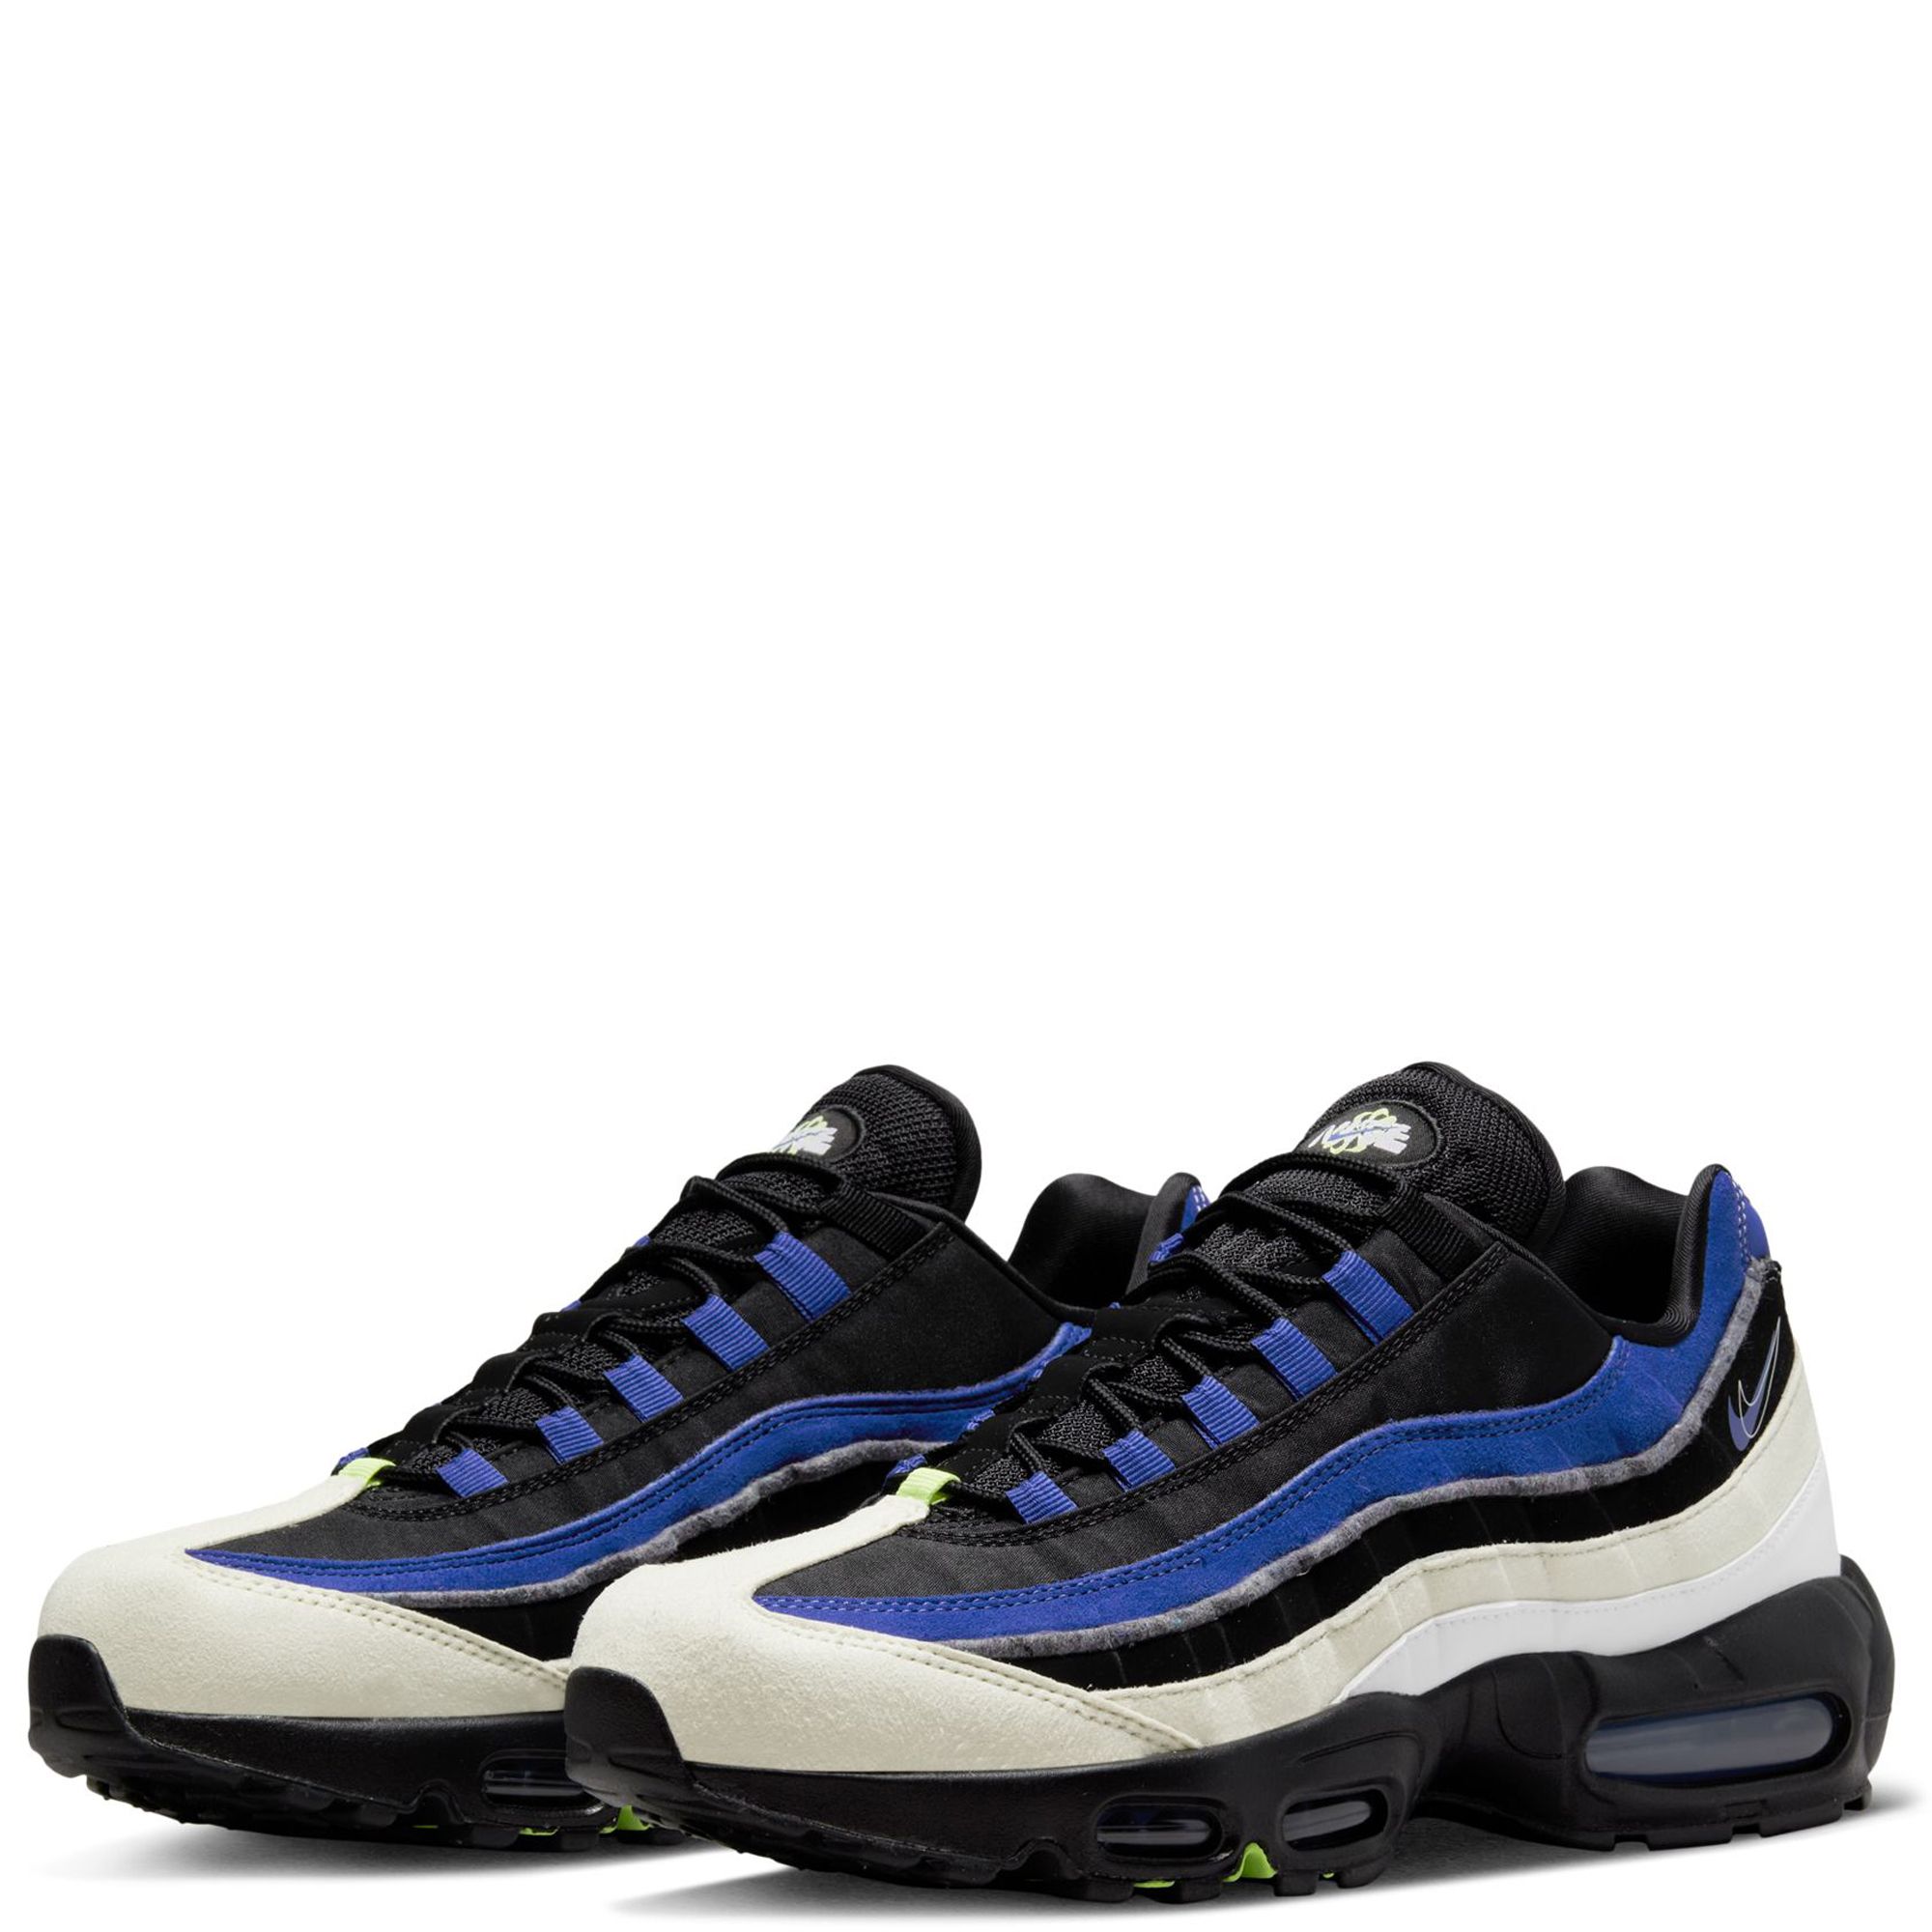 Chaussures Nike Air Max 95 Se pour Homme - DQ0268-001 - Bleu